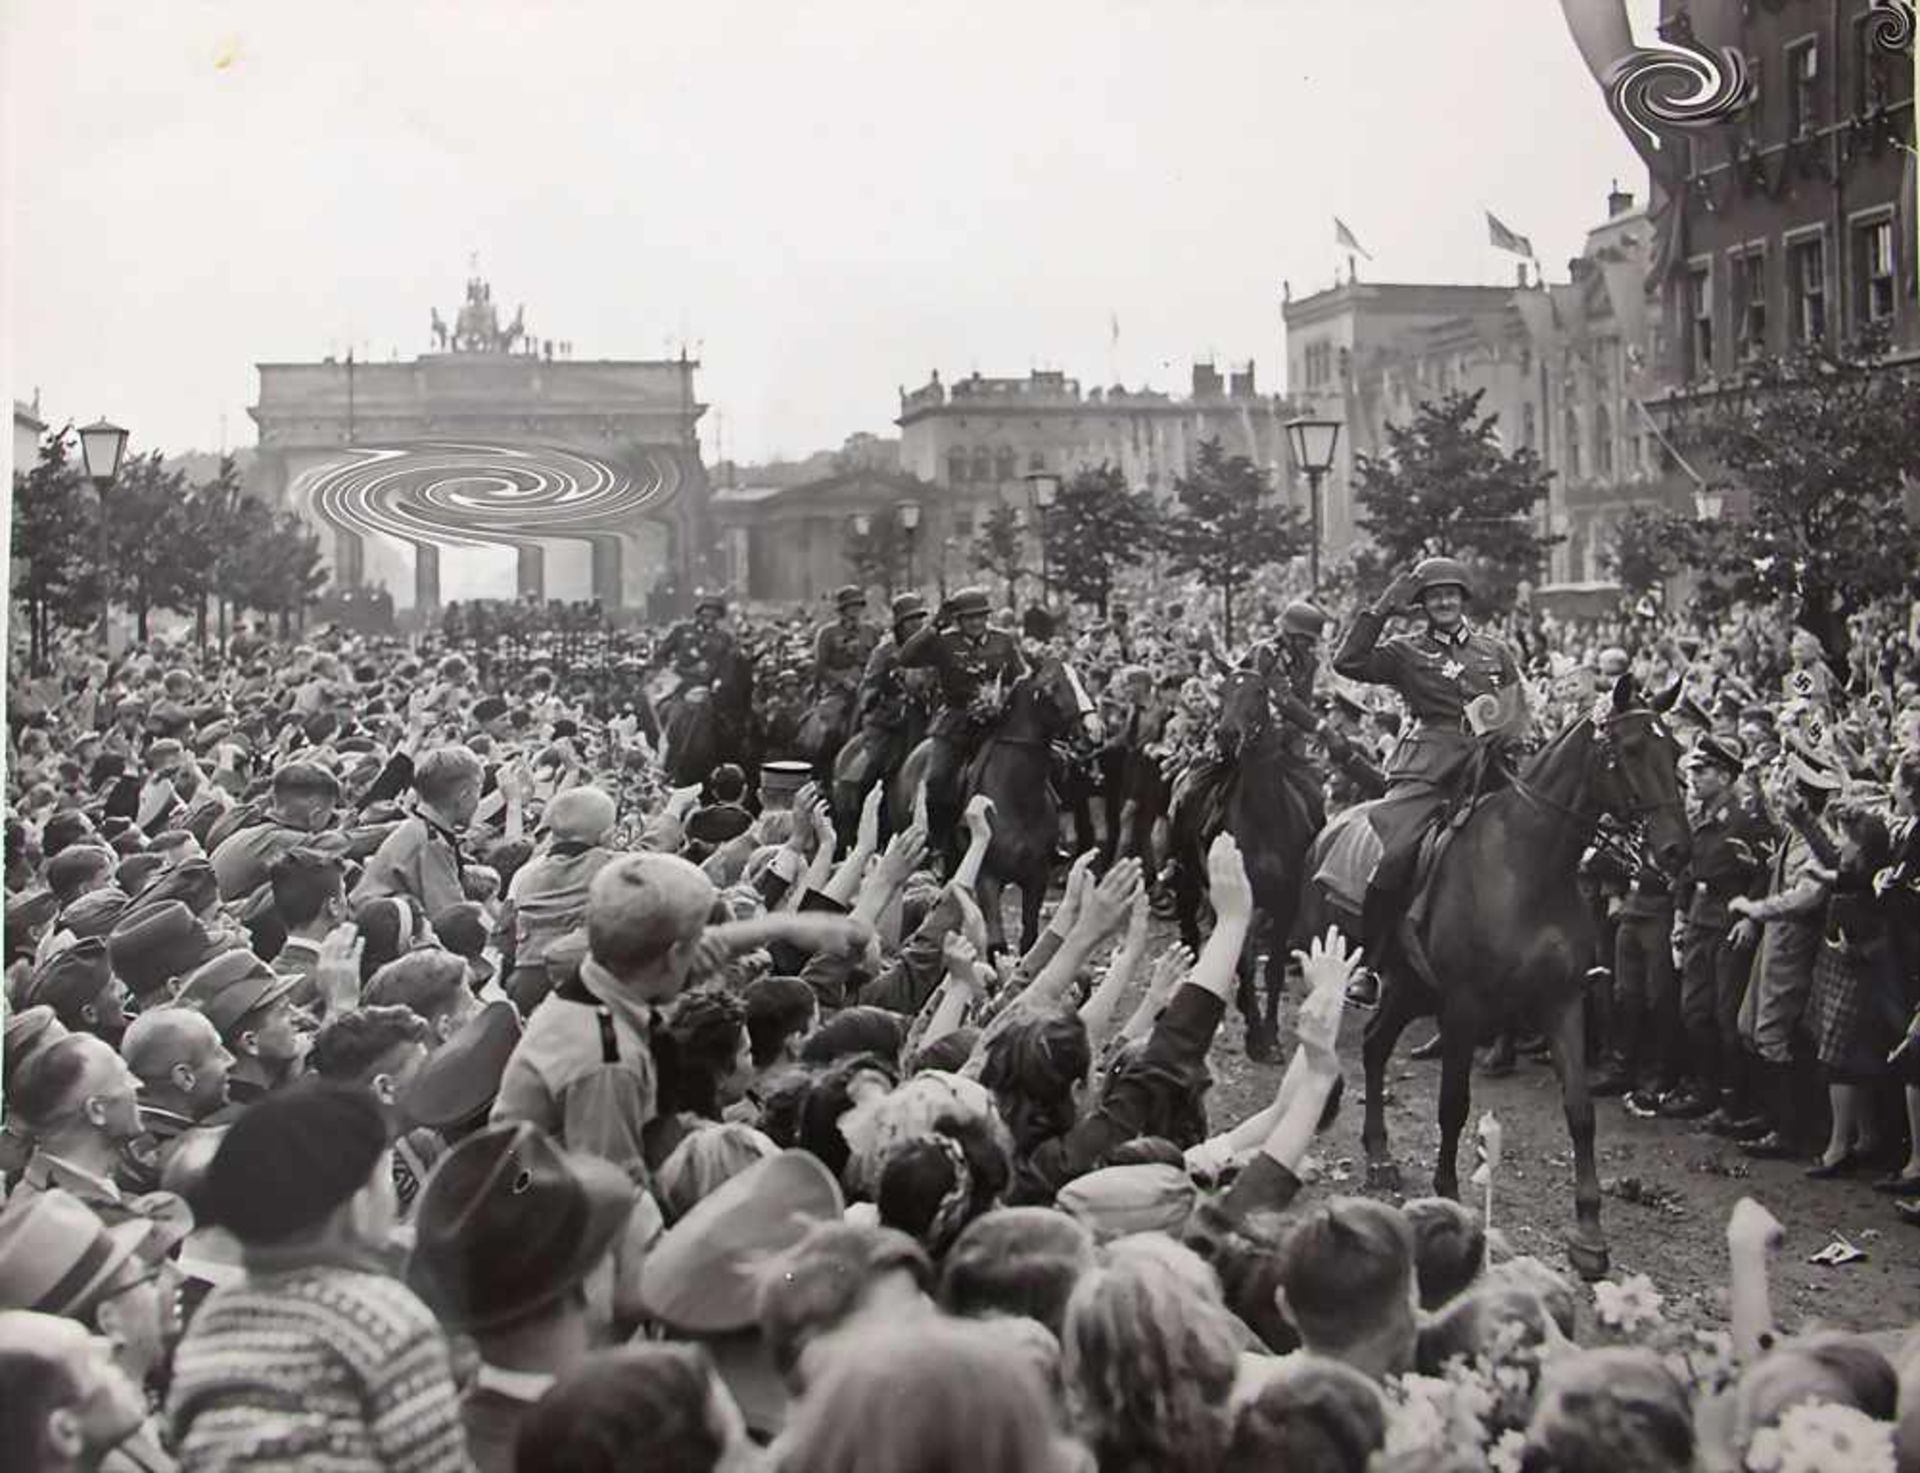 Fotografie 'Militär-Parade in Berlin' Drittes Reich / A photograph 'Military Parade in Berlin' Third